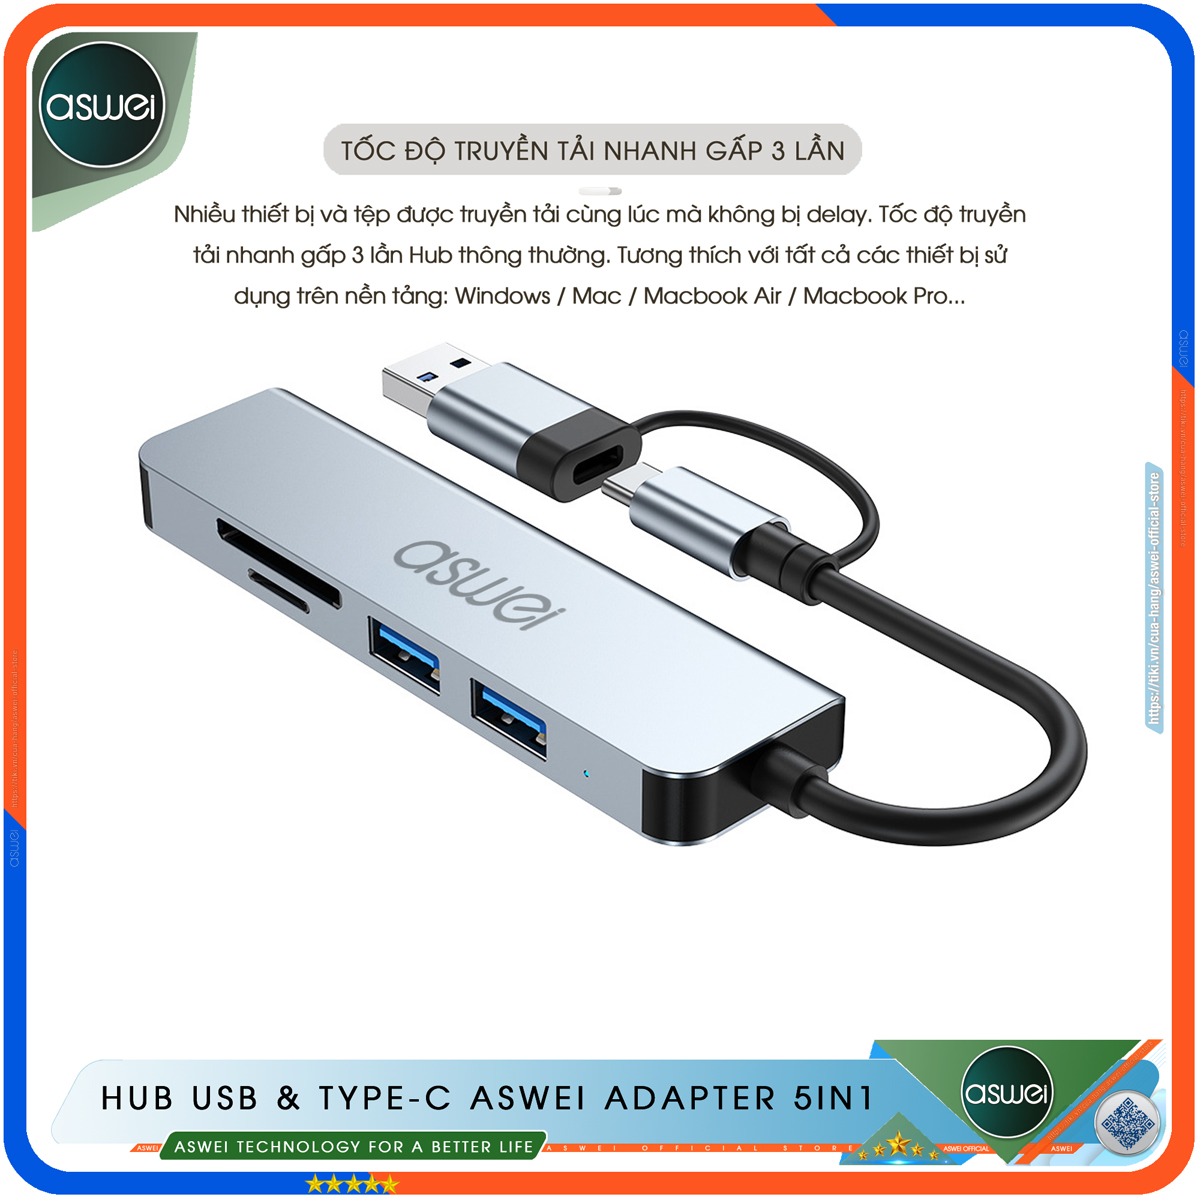 Hub USB 3.0 ASWEI 5 in 1 - Bộ Chia USB Tốc Độ Cao 5 Trong 1 To USB 3.0, Đầu Đọc Thẻ SD TF - Hub Chuyển Đổi USB Type-C Dành Cho Macbook, Laptop, PC, Máy Tính Bảng, Điện Thoại - Hàng Chính Hãng